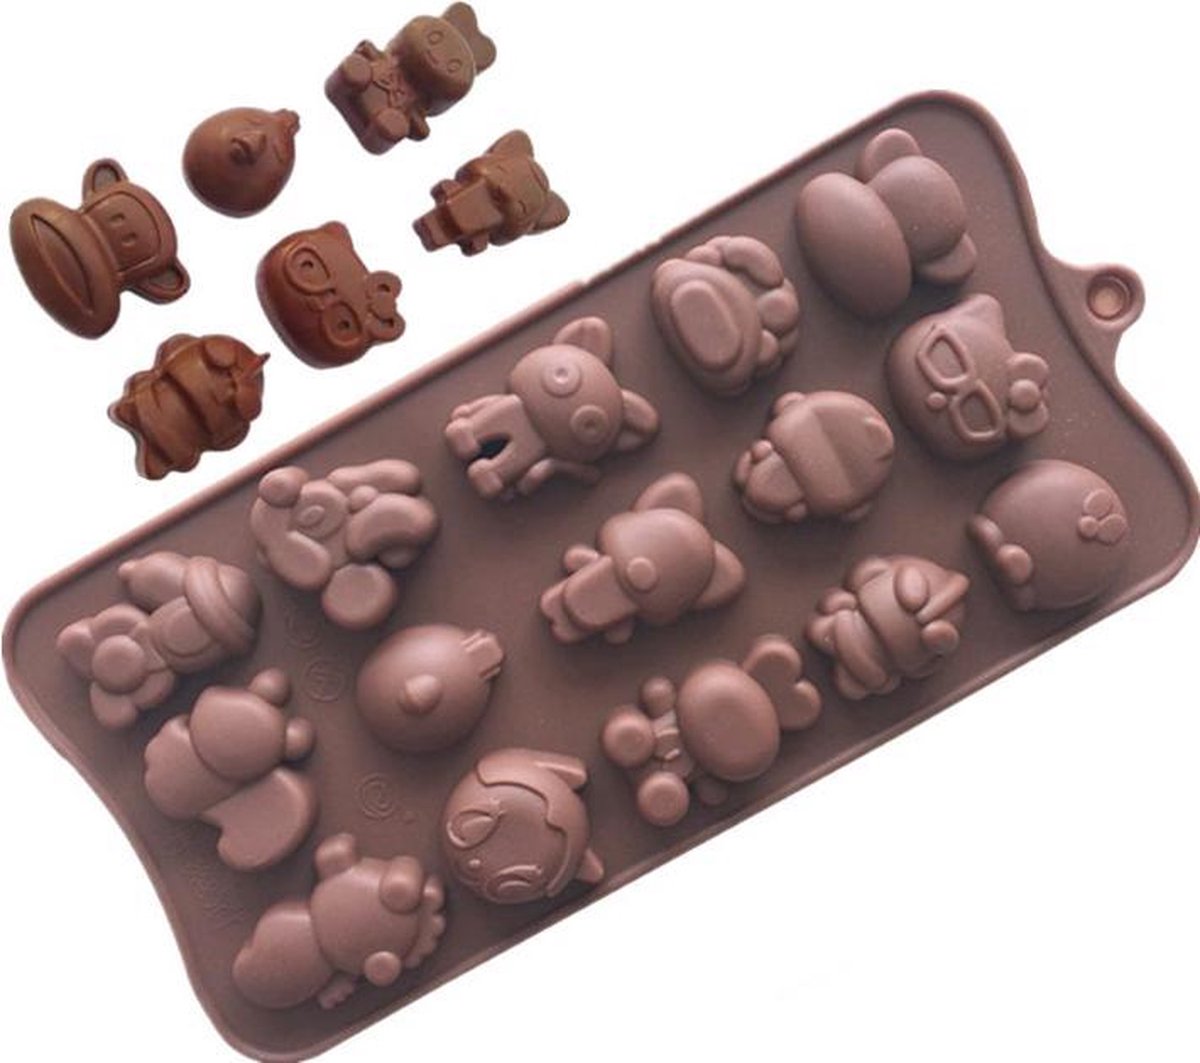 ProductGoods - Siliconen Bakvorm - Bonbonvorm - Chocoladevorm - 15 Stuks In Verschillende Dierenvorm - Bakvormen